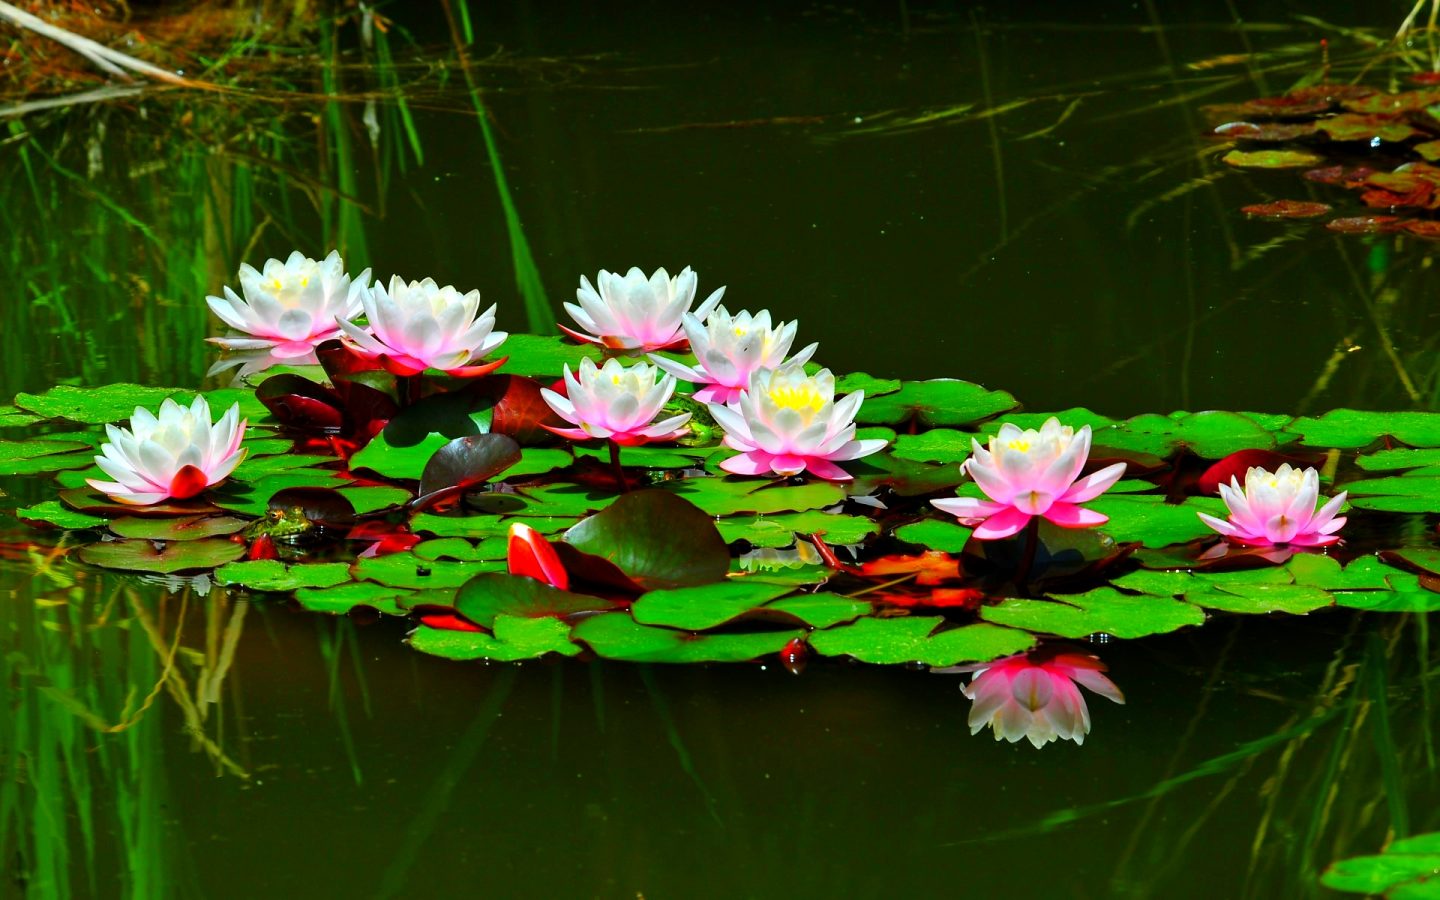 Lotus Flowers In Pond - 1440x900 Wallpaper 